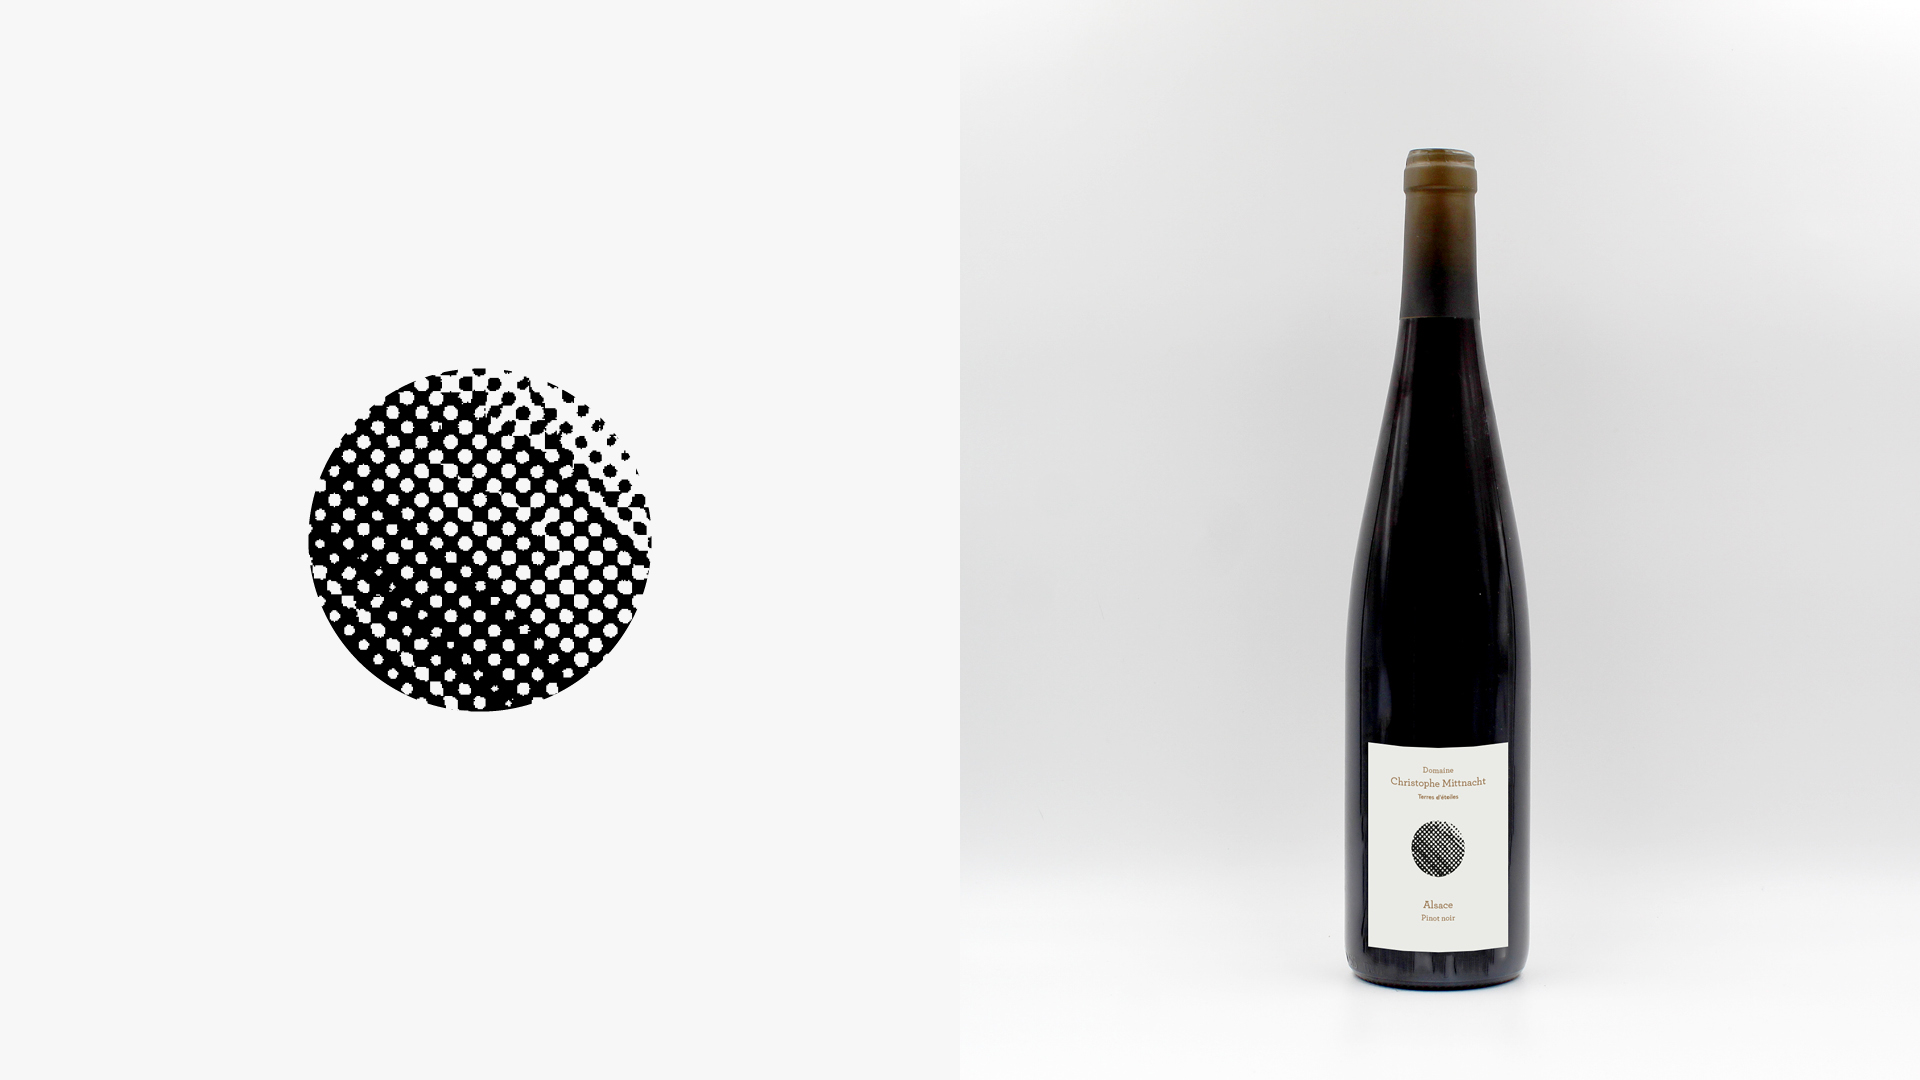 Étiquette et bouteille Terres d’étoiles — Alsace Pinot noir